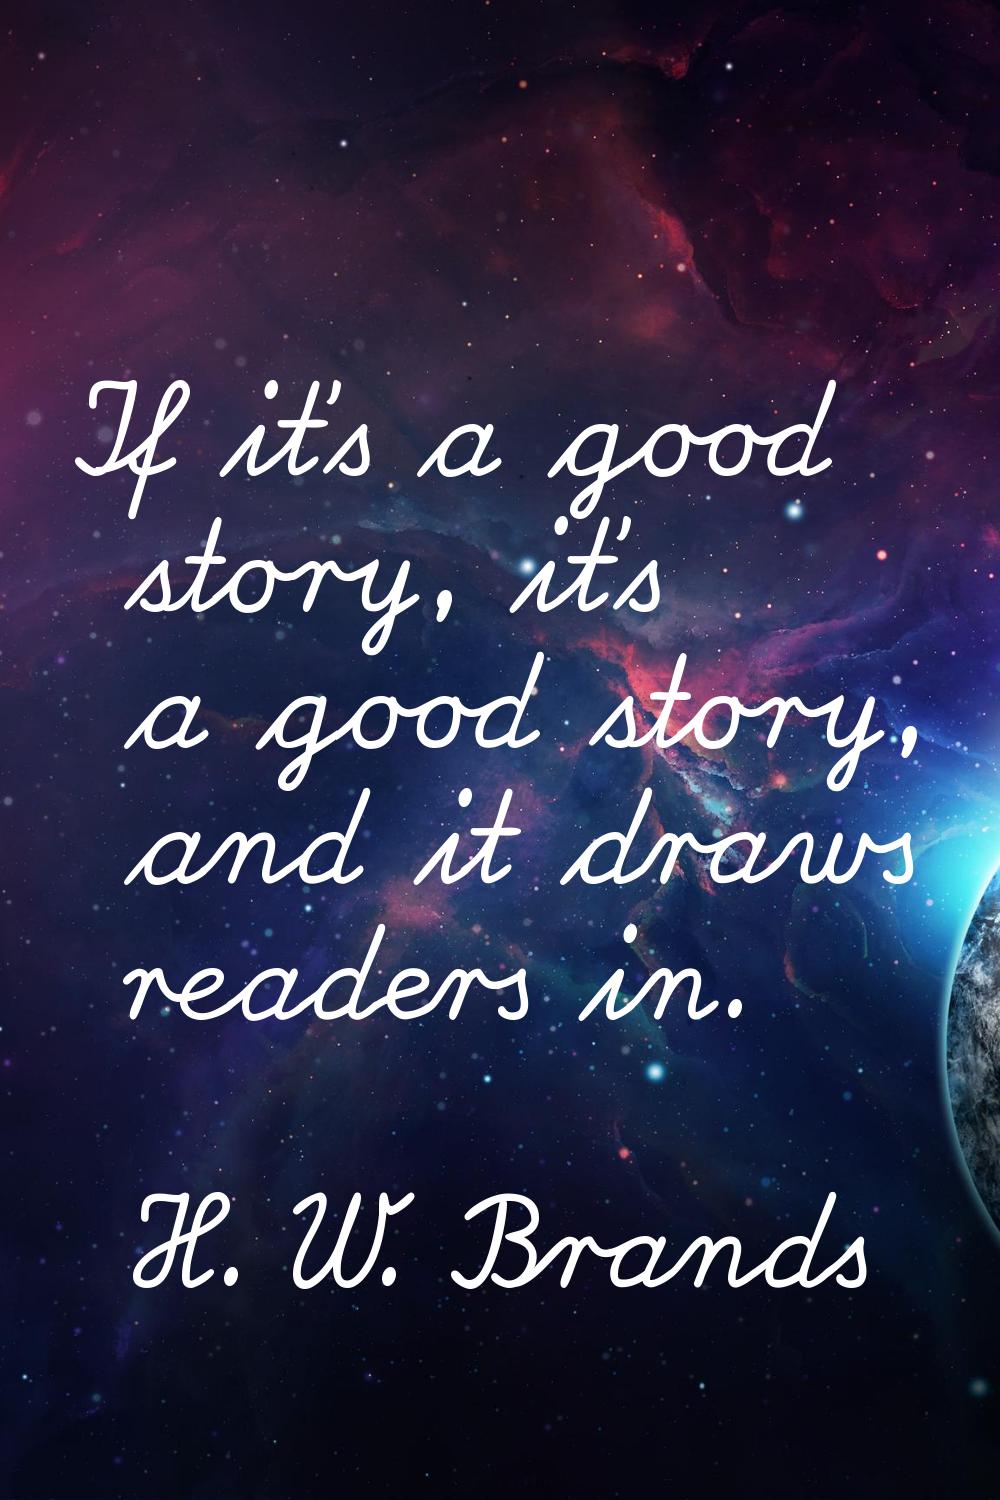 If it's a good story, it's a good story, and it draws readers in.